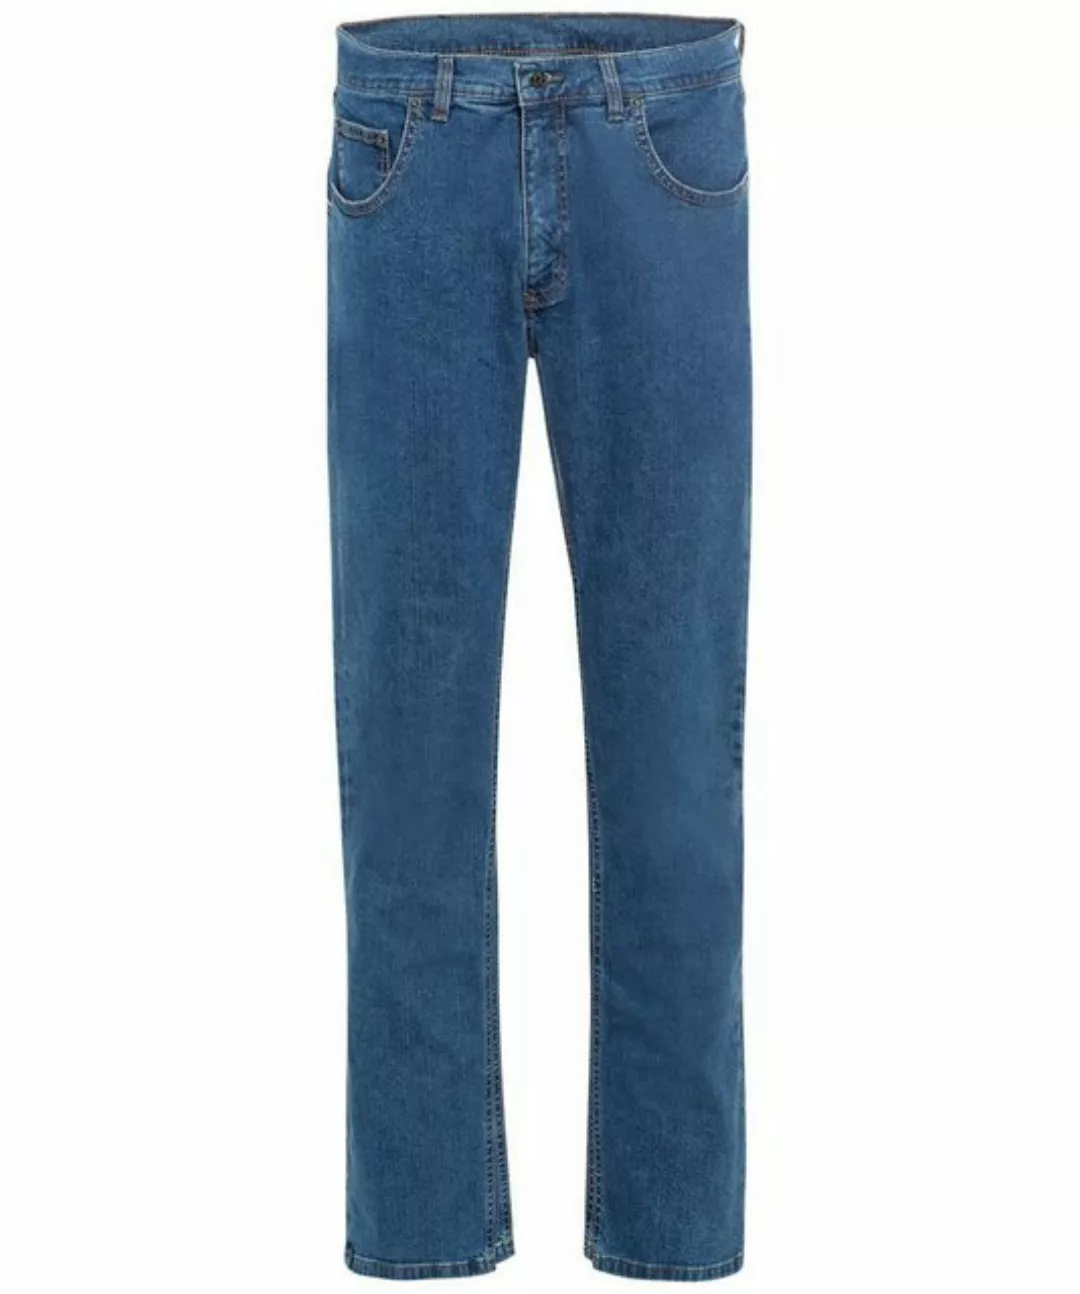 Pioneer Authentic Jeans 5-Pocket-Jeans PIONEER RON blue stonewash 11441 638 günstig online kaufen